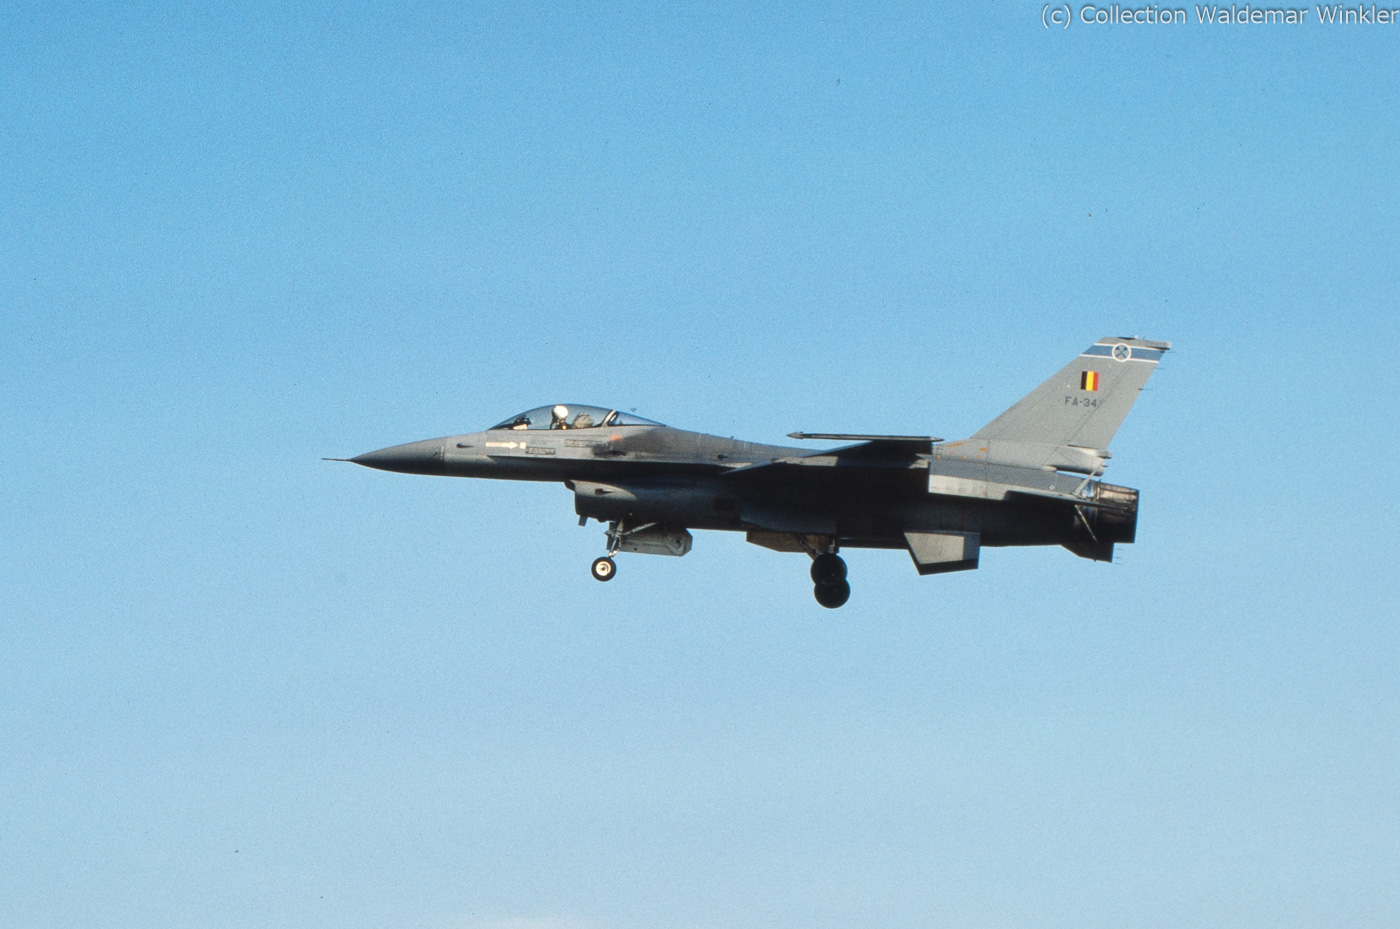 F-16A_Fighting_Falcon_DSC_3484.jpg